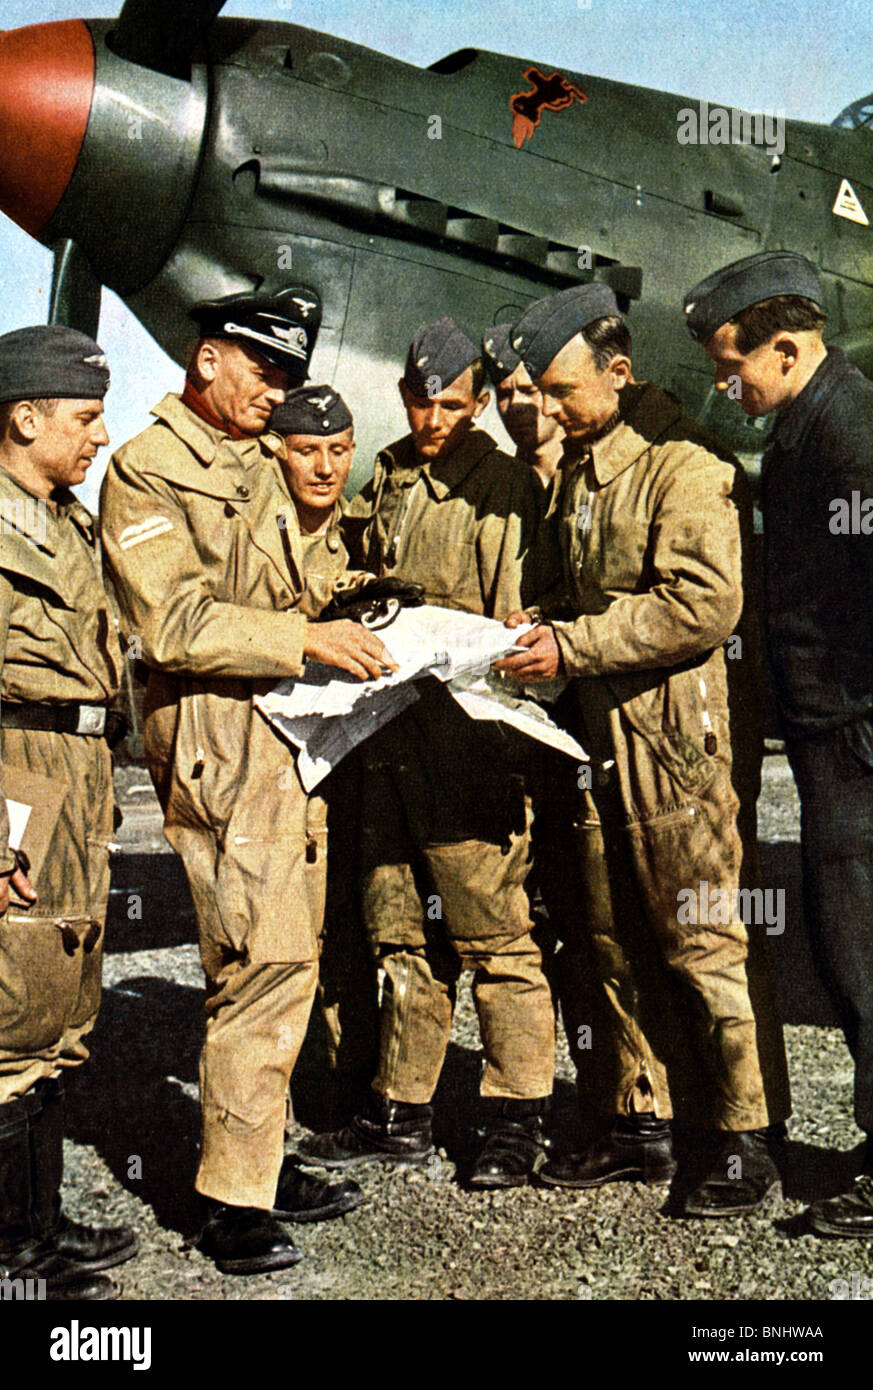 Dem zweiten Weltkrieg Nazi-Deutschland gegen England Großbritannien Luftwaffe pilot Jagdflugzeug Piloten Karte Flugzeug Flugzeug Luft treffen Stockfoto